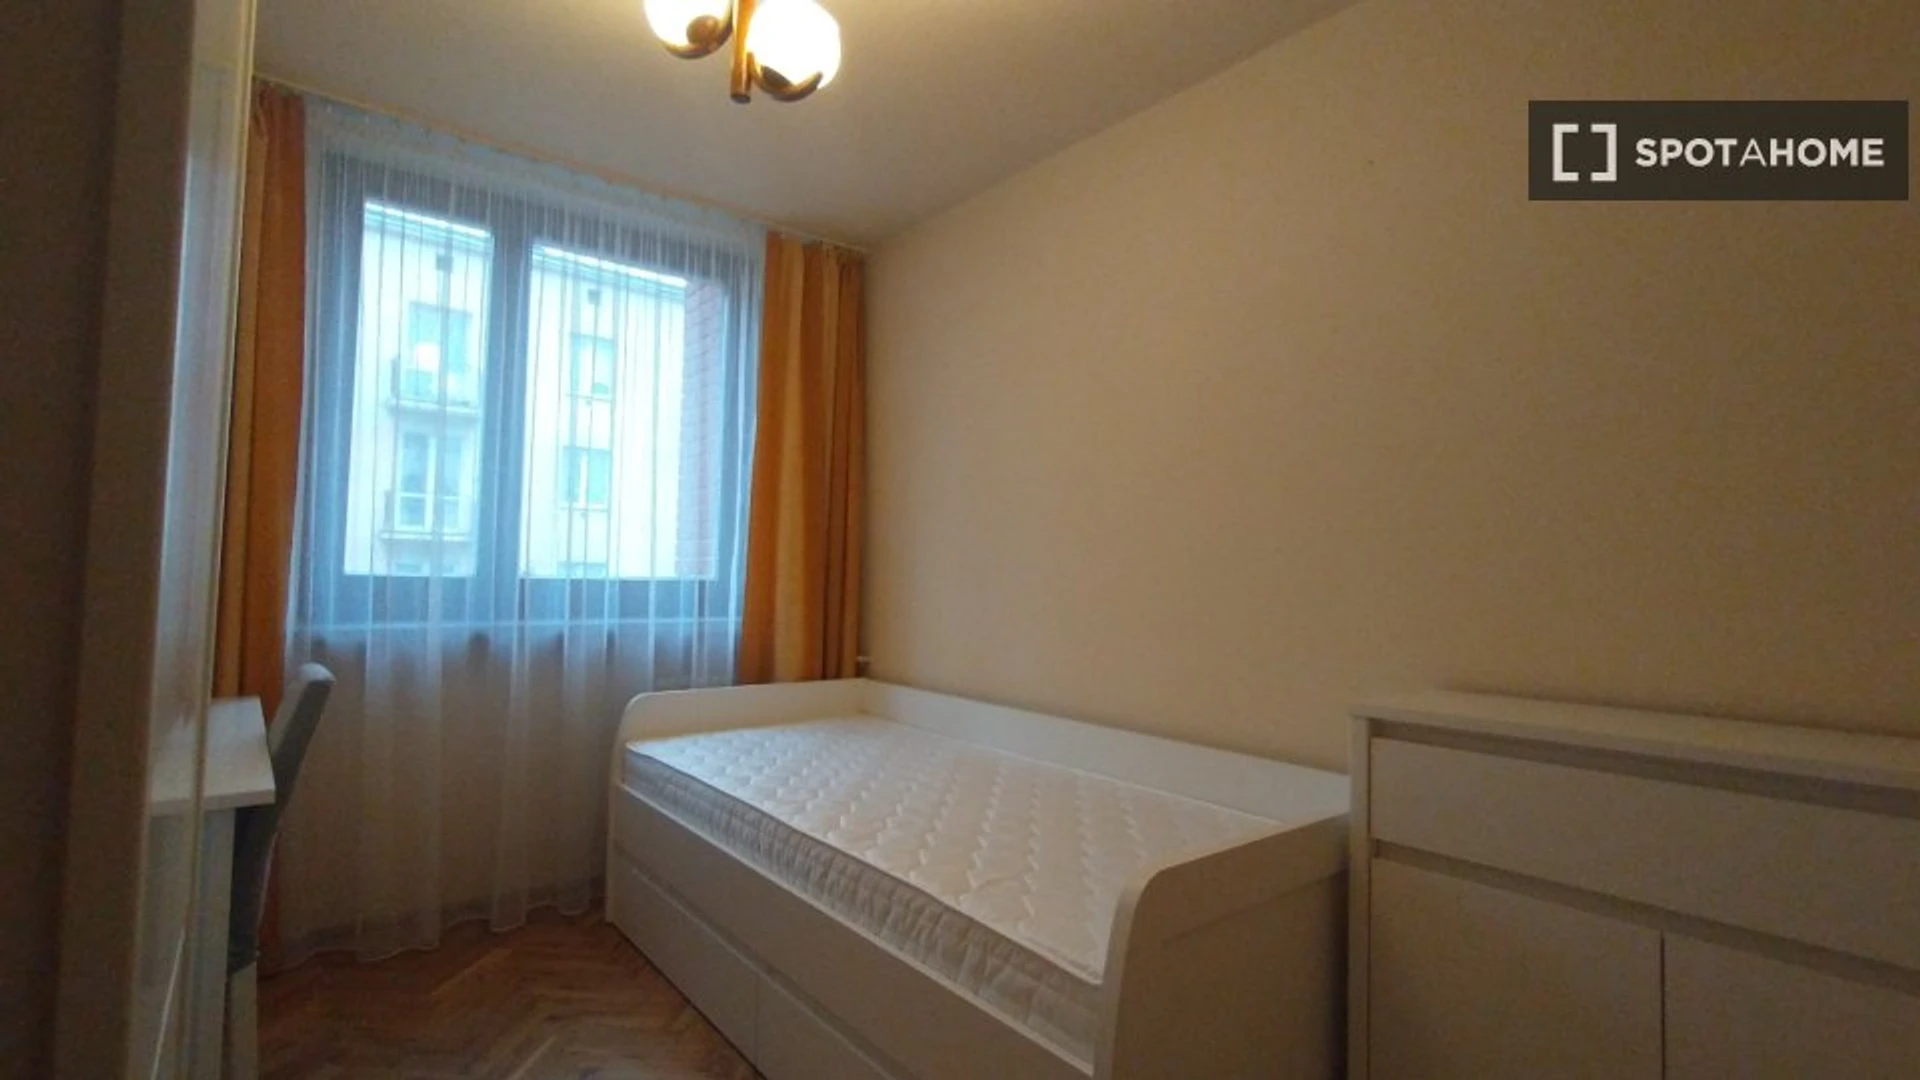 Quarto para alugar com cama de casal em Lublin